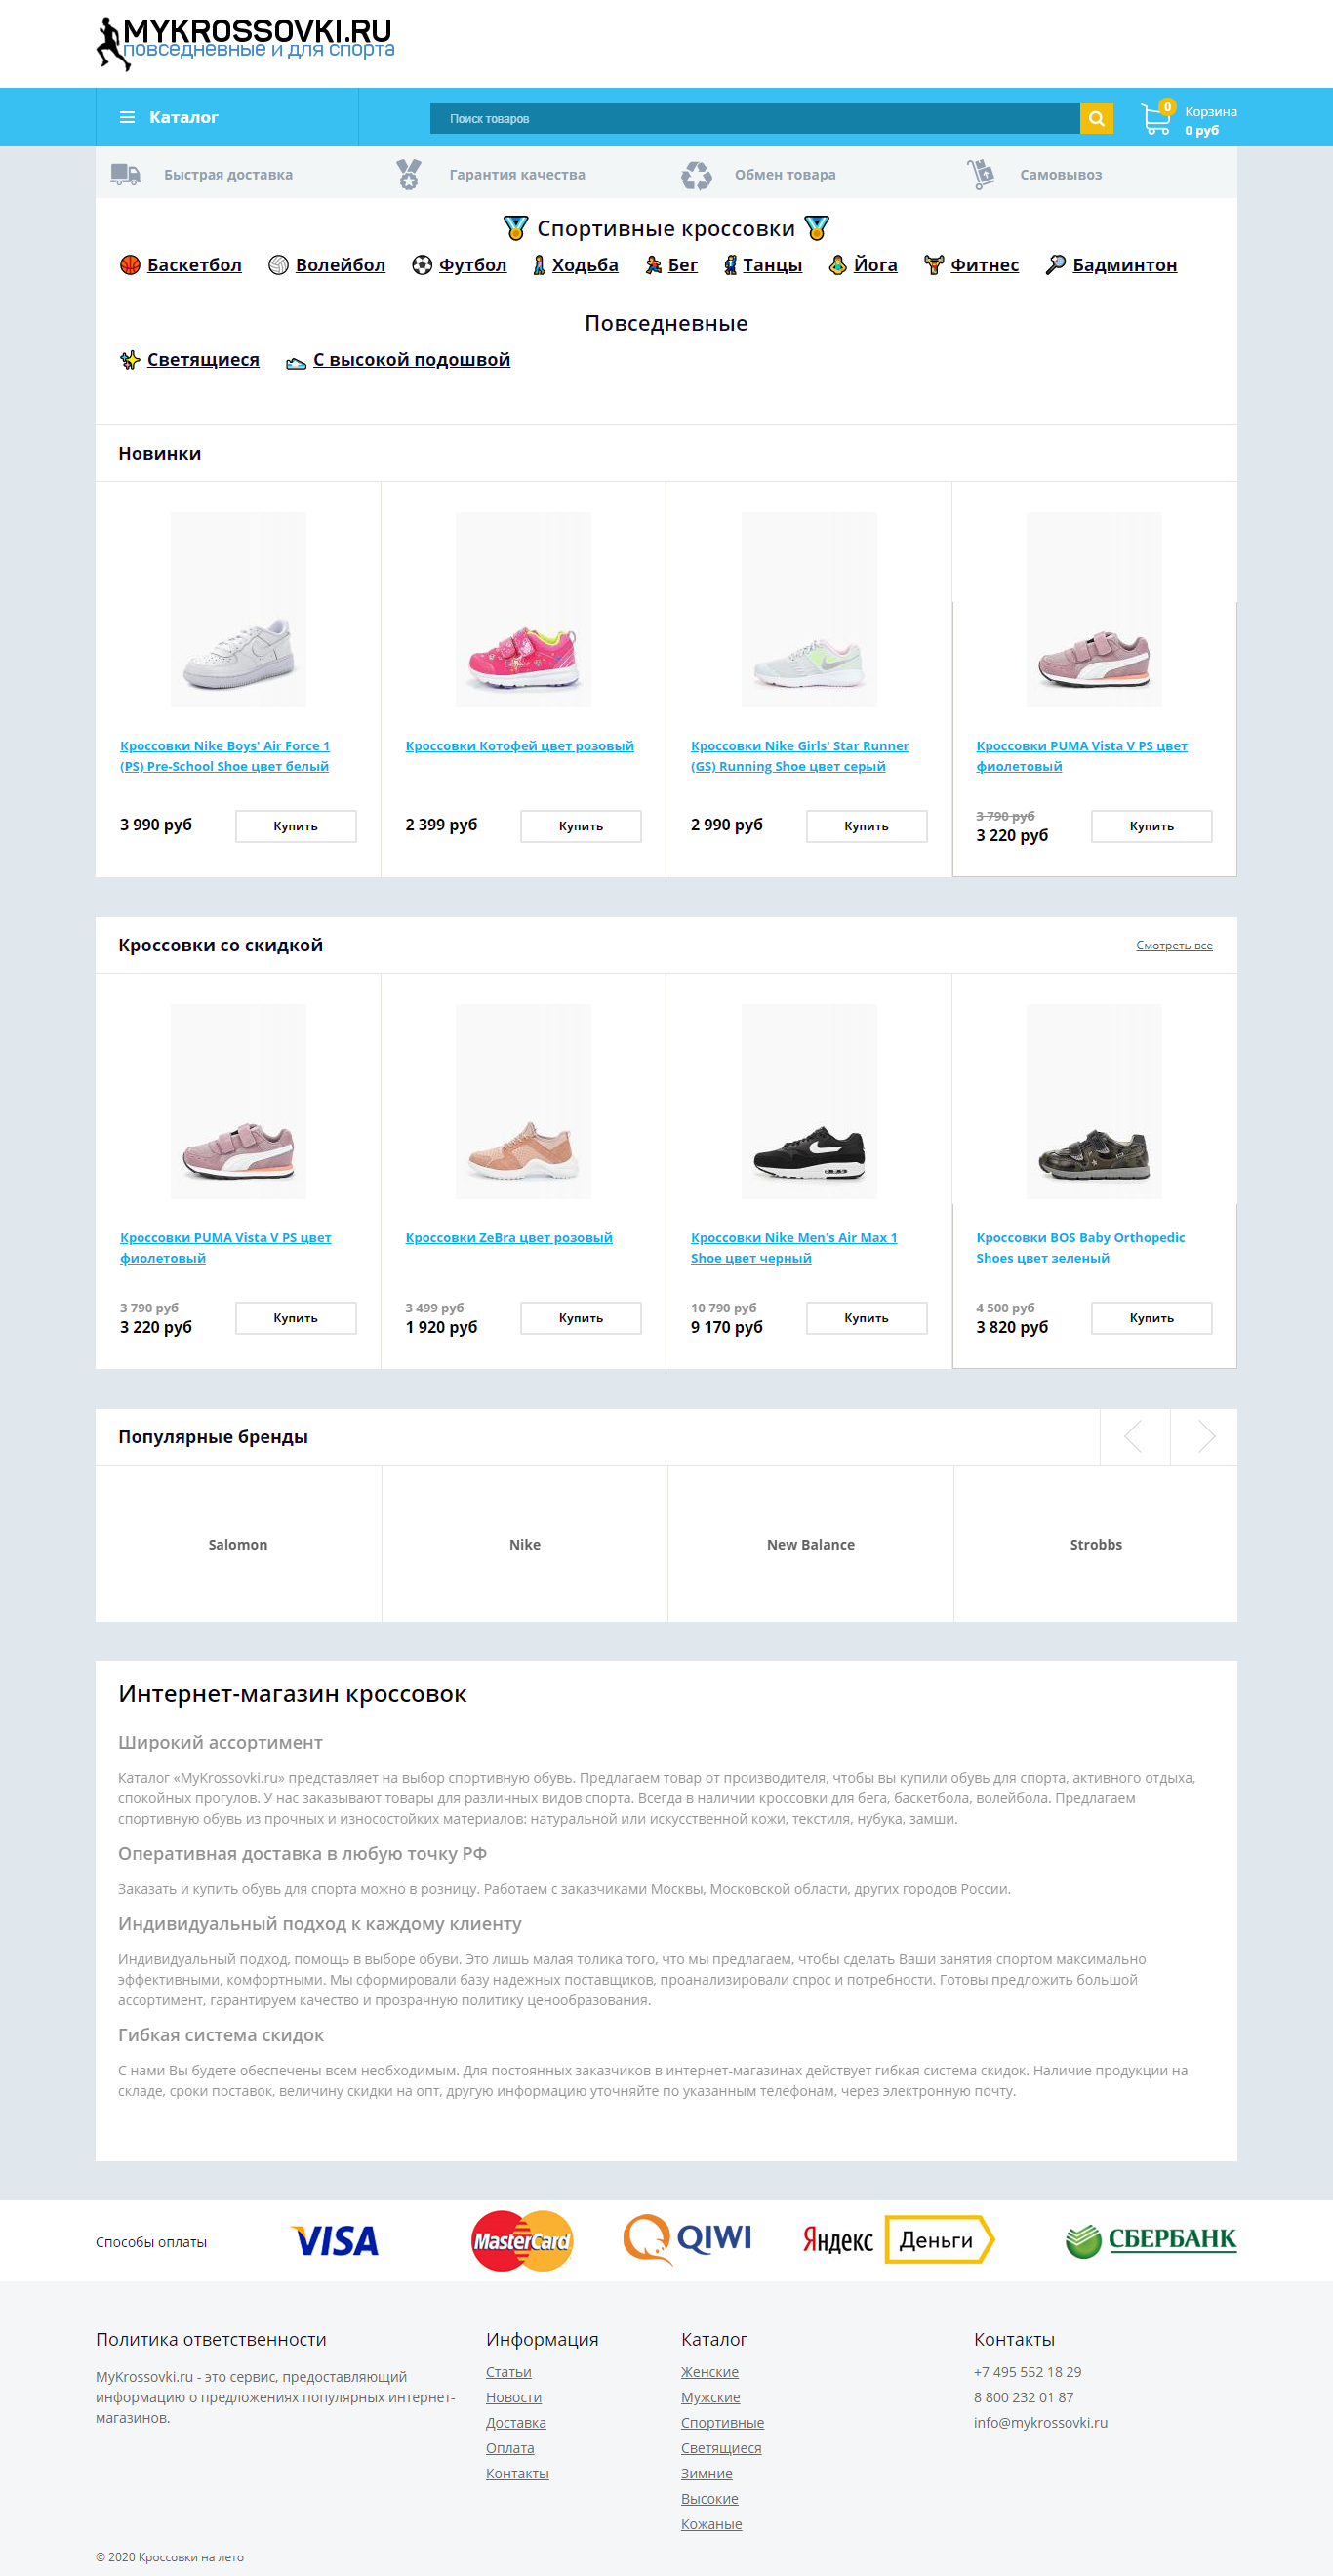 Сайт интернет-магазина кроссовок Mykrossovki